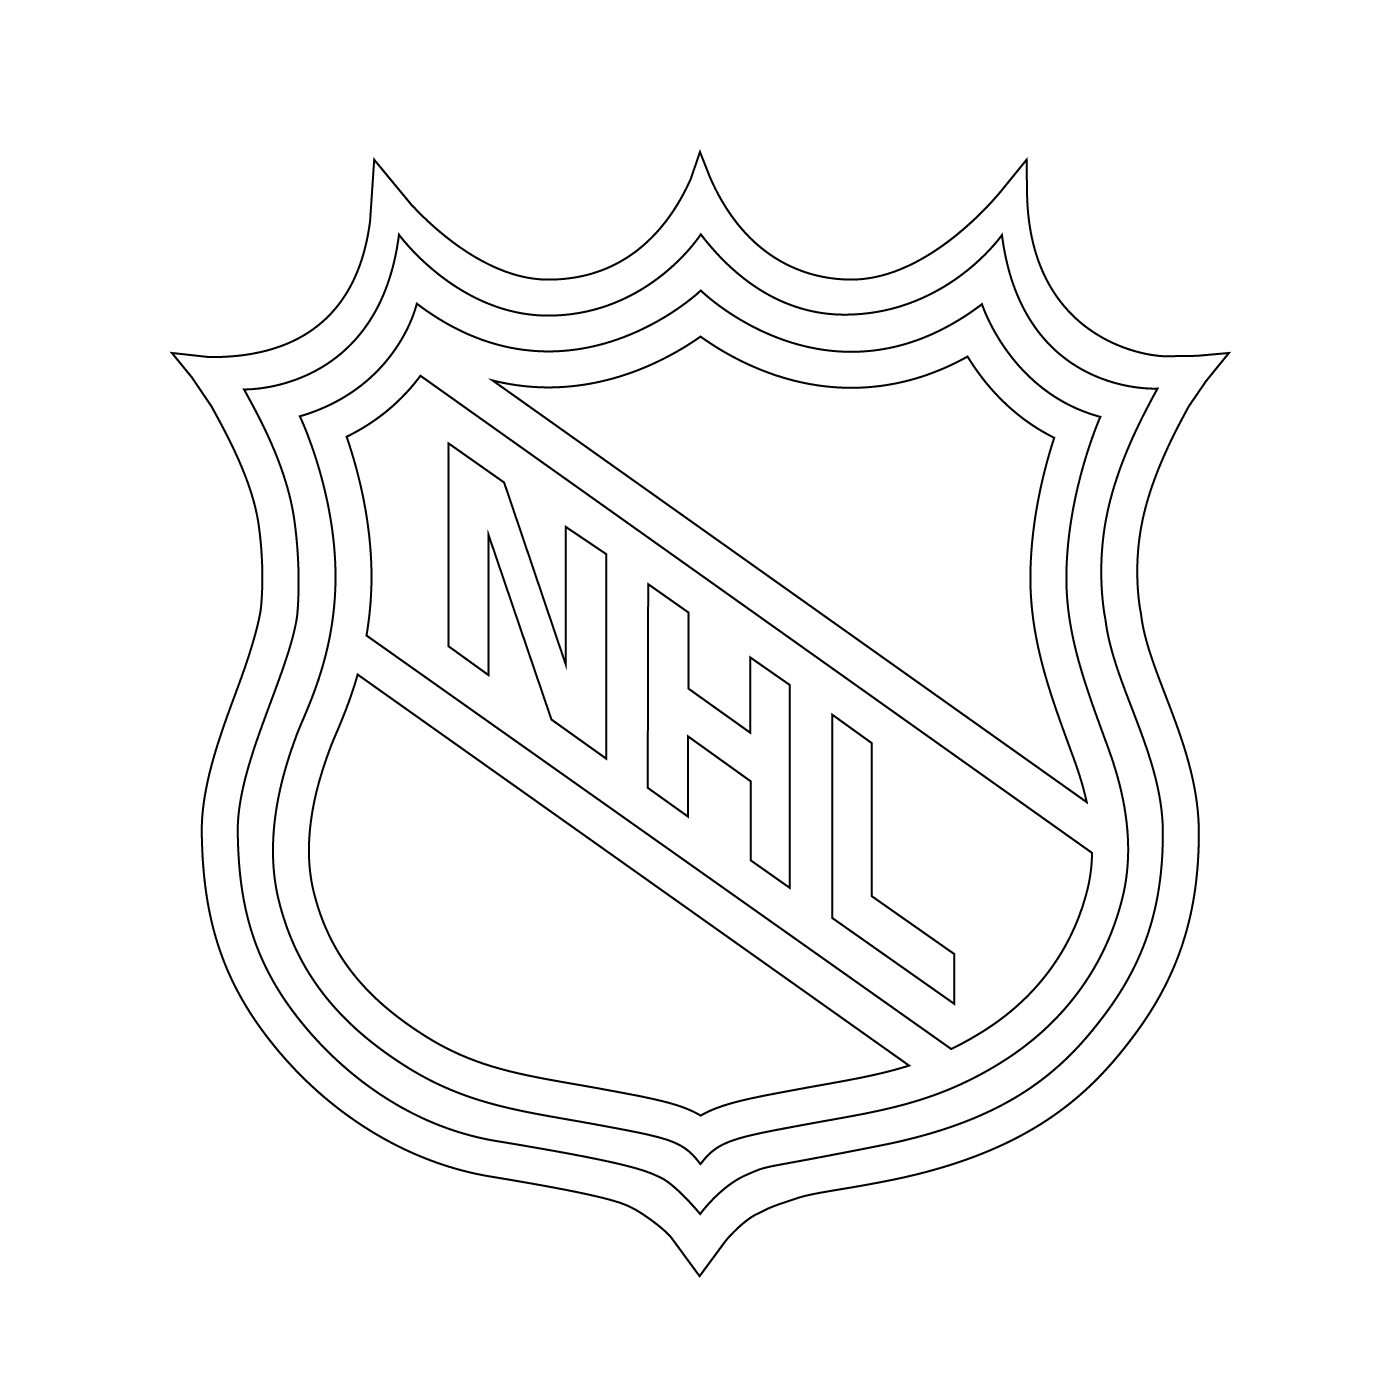   Logo de la LNH (Ligue nationale de hockey) 